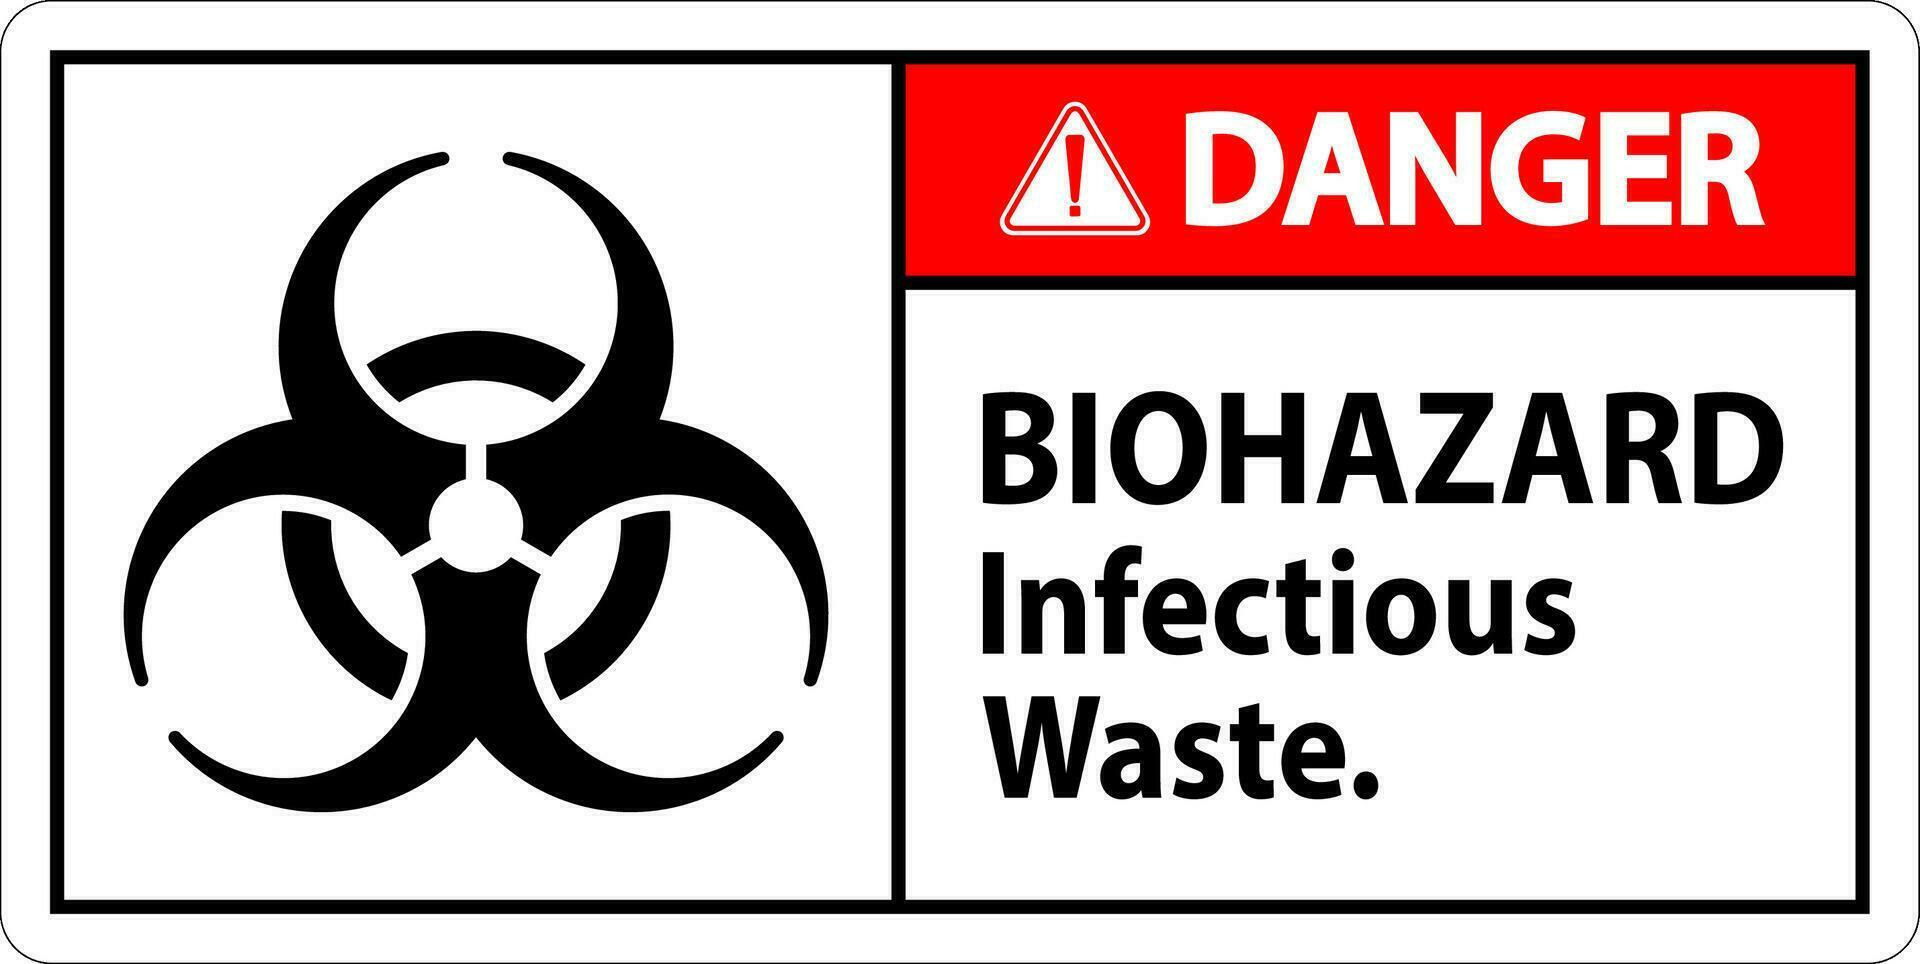 biohazard fara märka biohazard infektiös avfall vektor